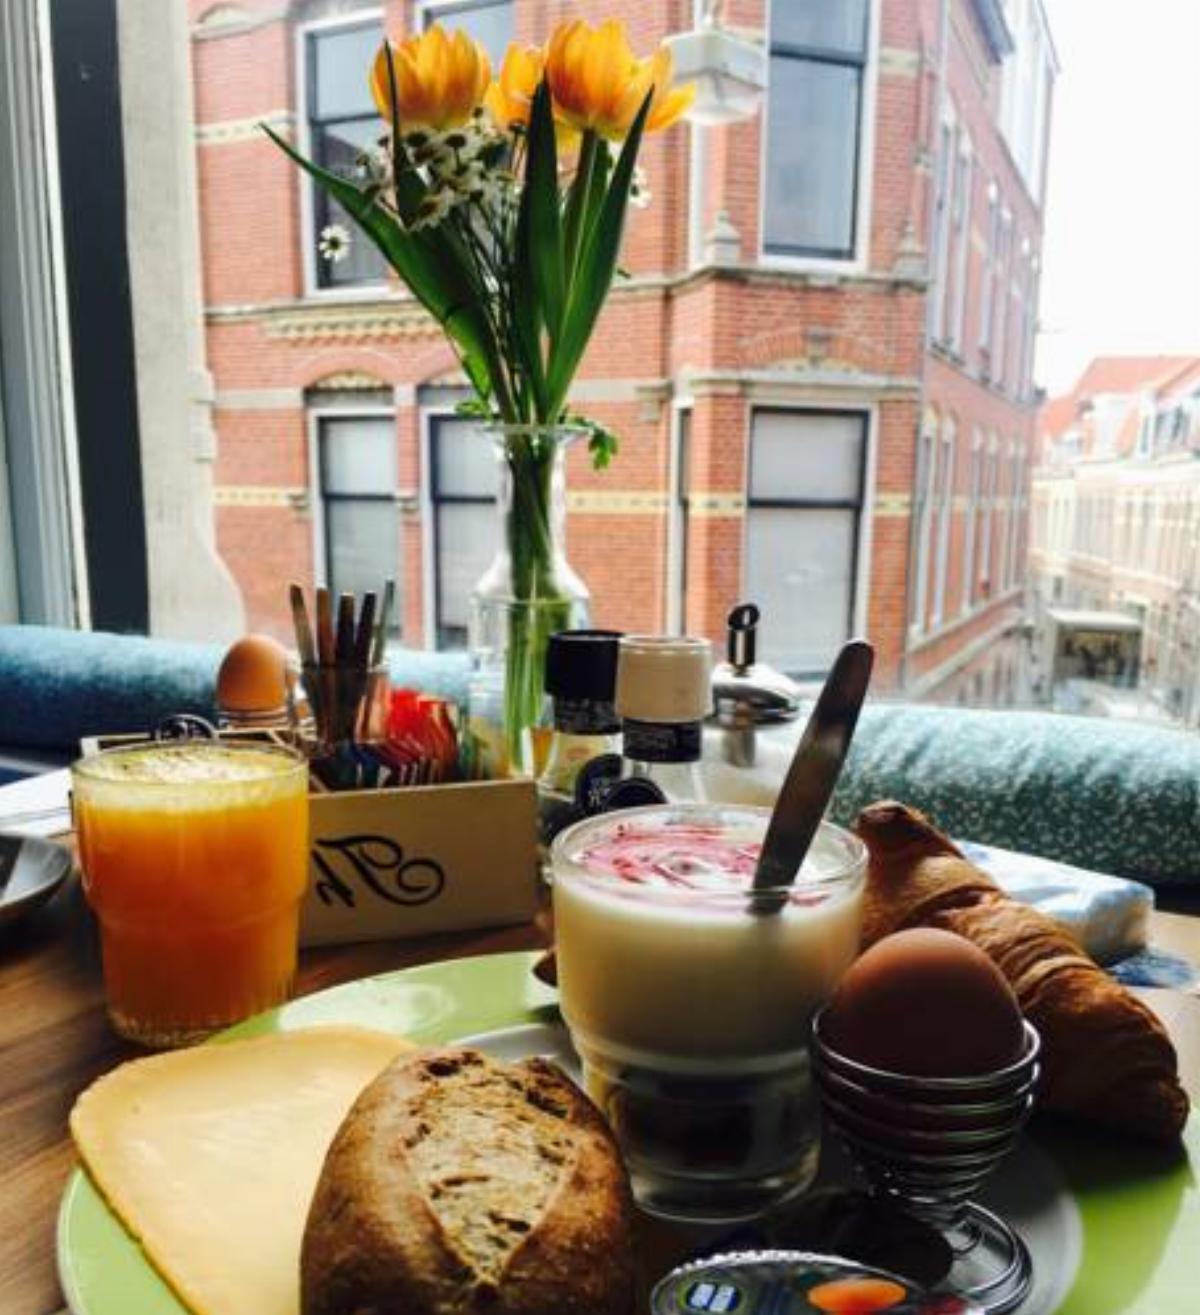 Bed & Breakfast Hotel Malts Hotel Haarlem Netherlands